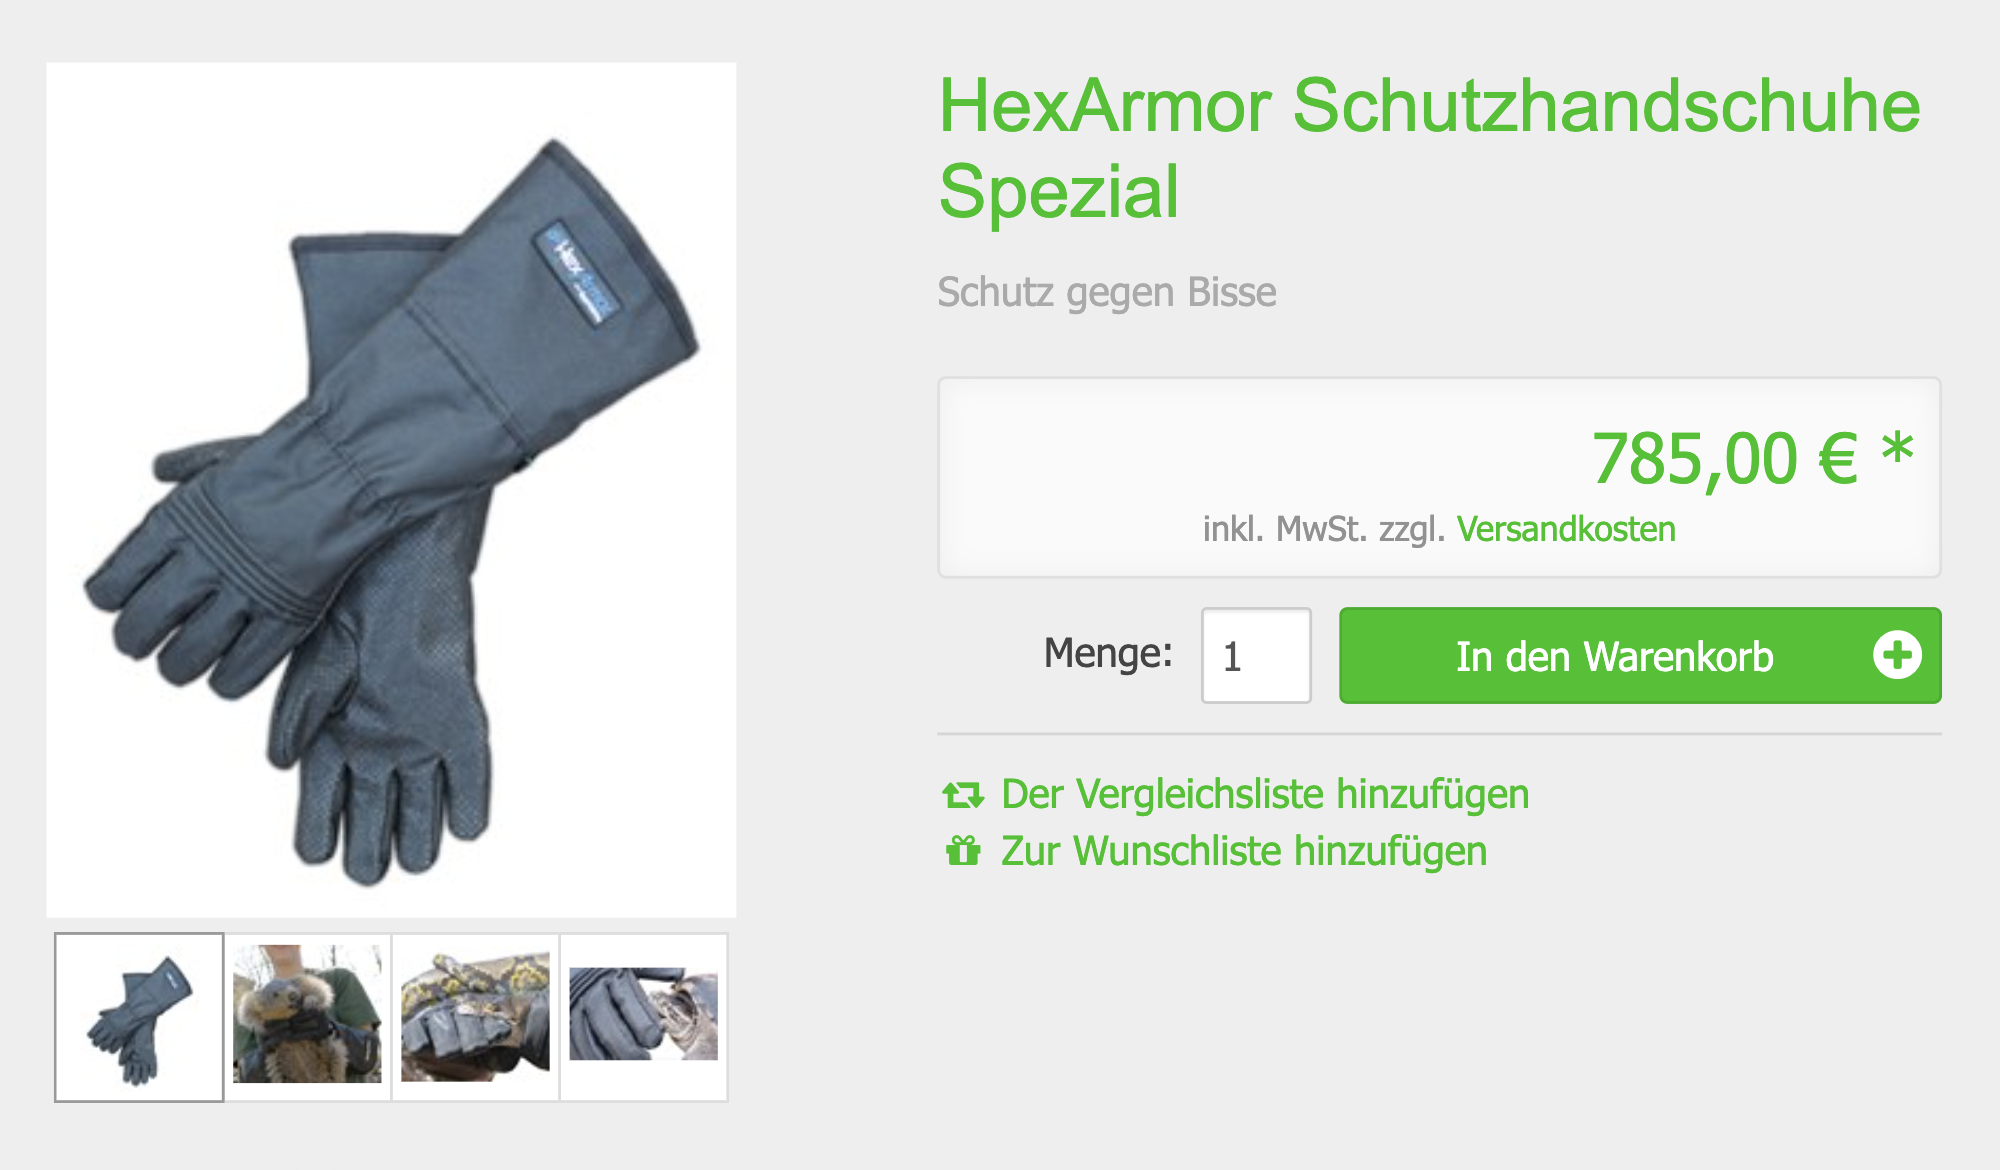 Только такие суперпрочные длинные кевларовые перчатки защитят при работе с коброй. Источник: katalog.zooprofis.de